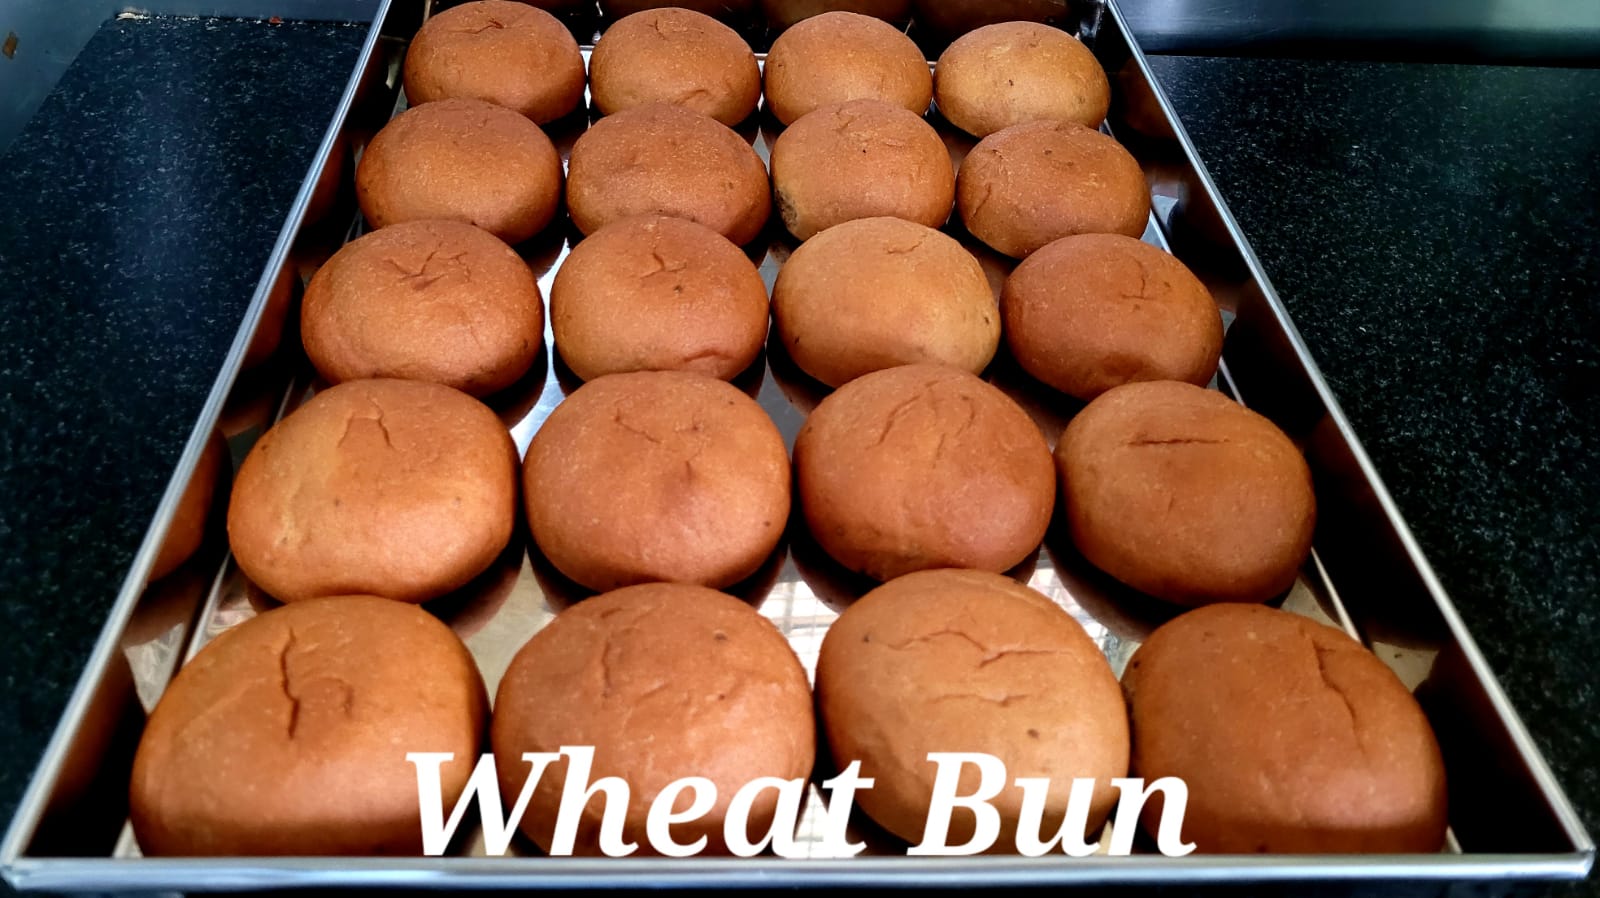 Wheat Bun